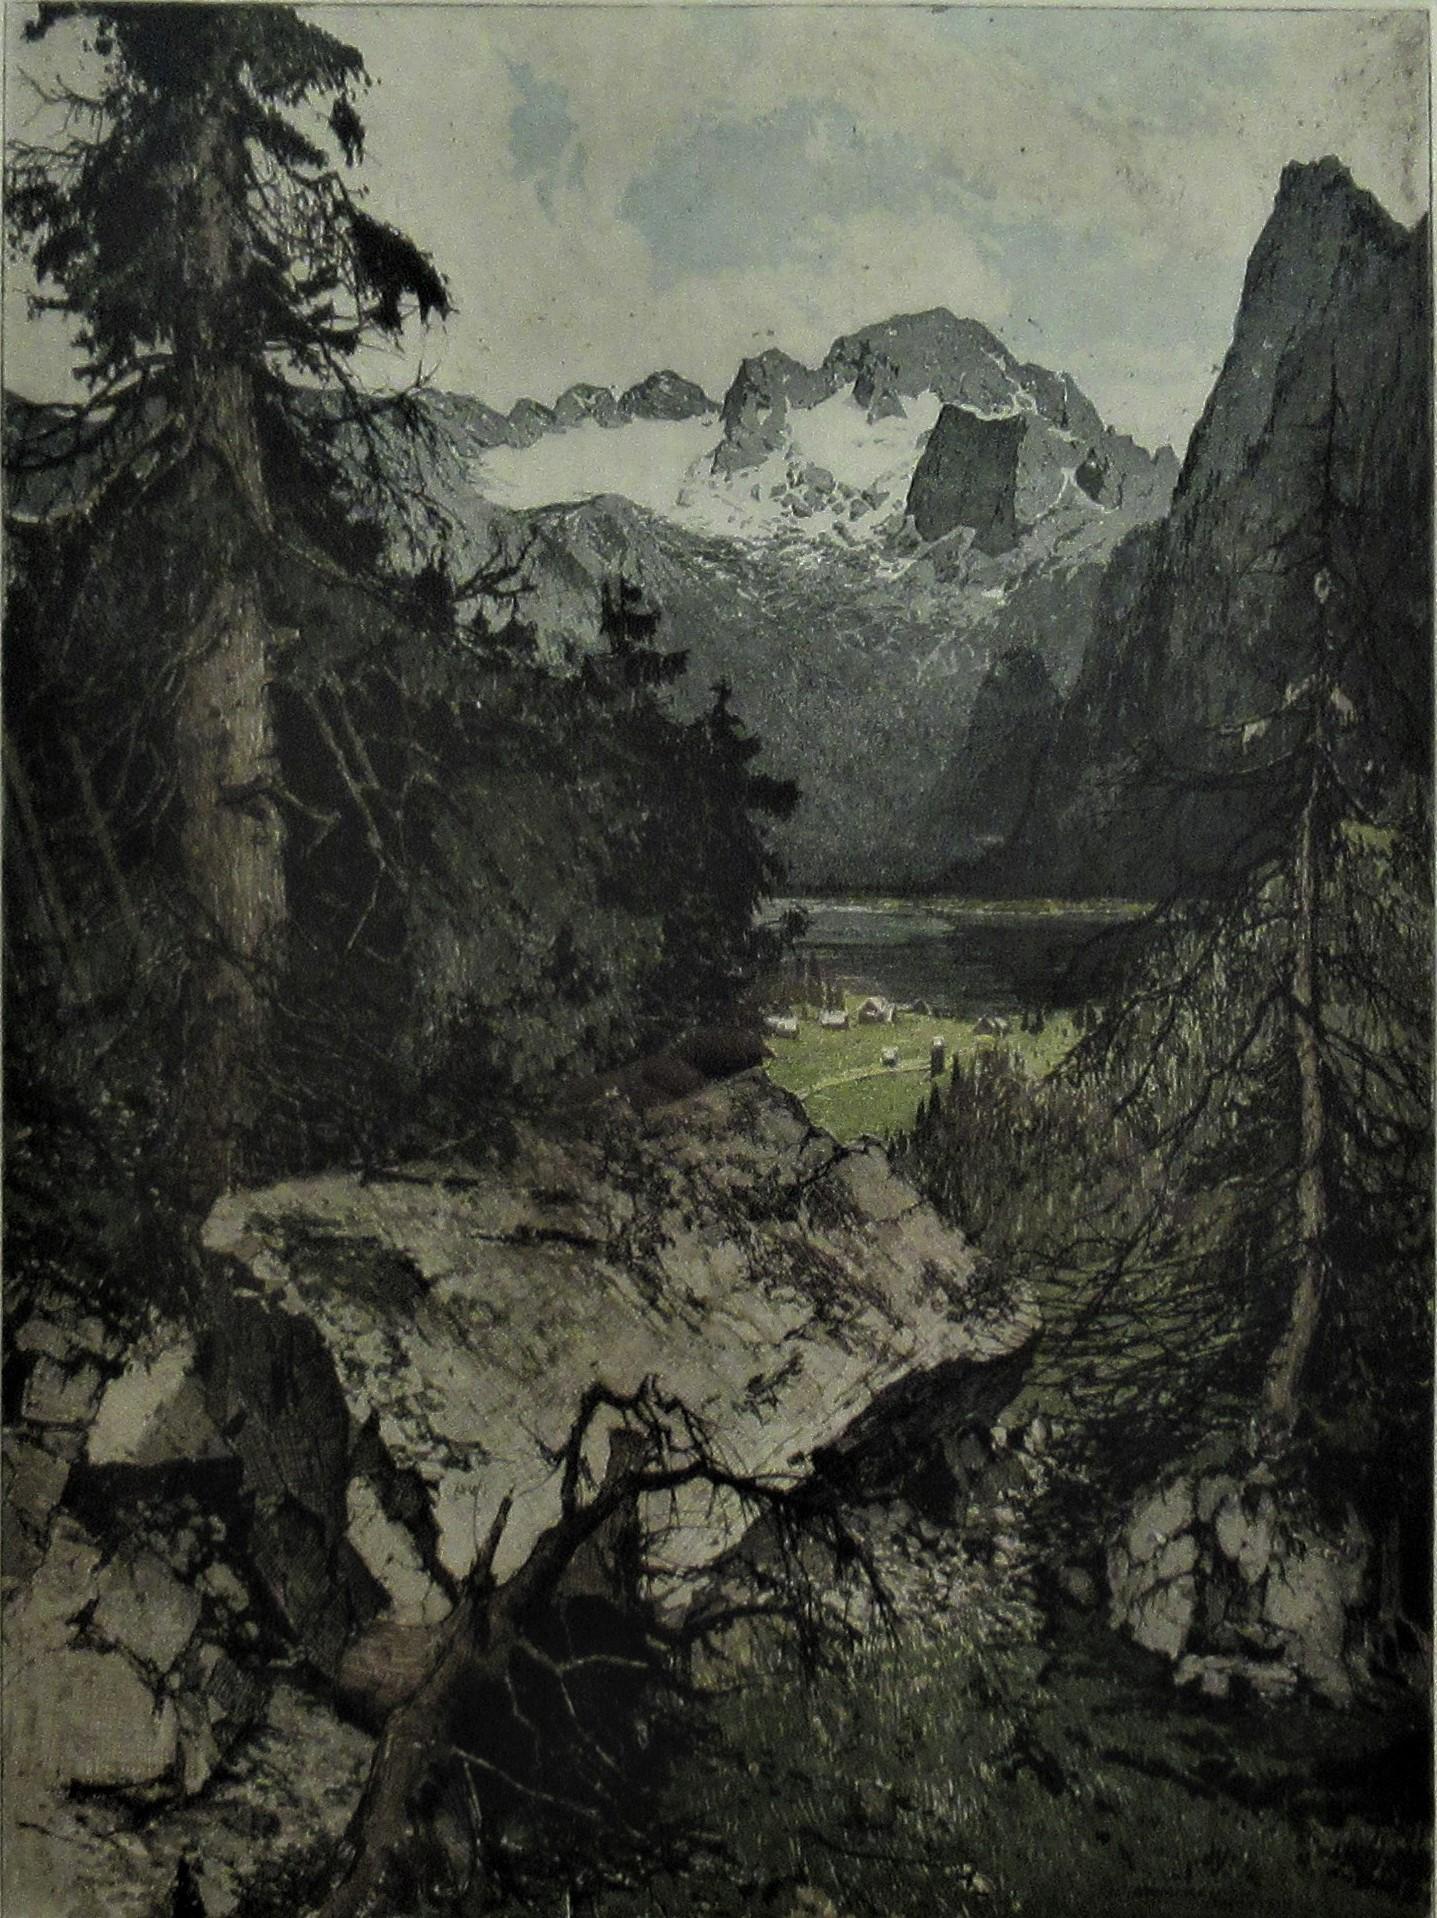 Hoer Dachstein, Austria - Print by Josef Eidenberger